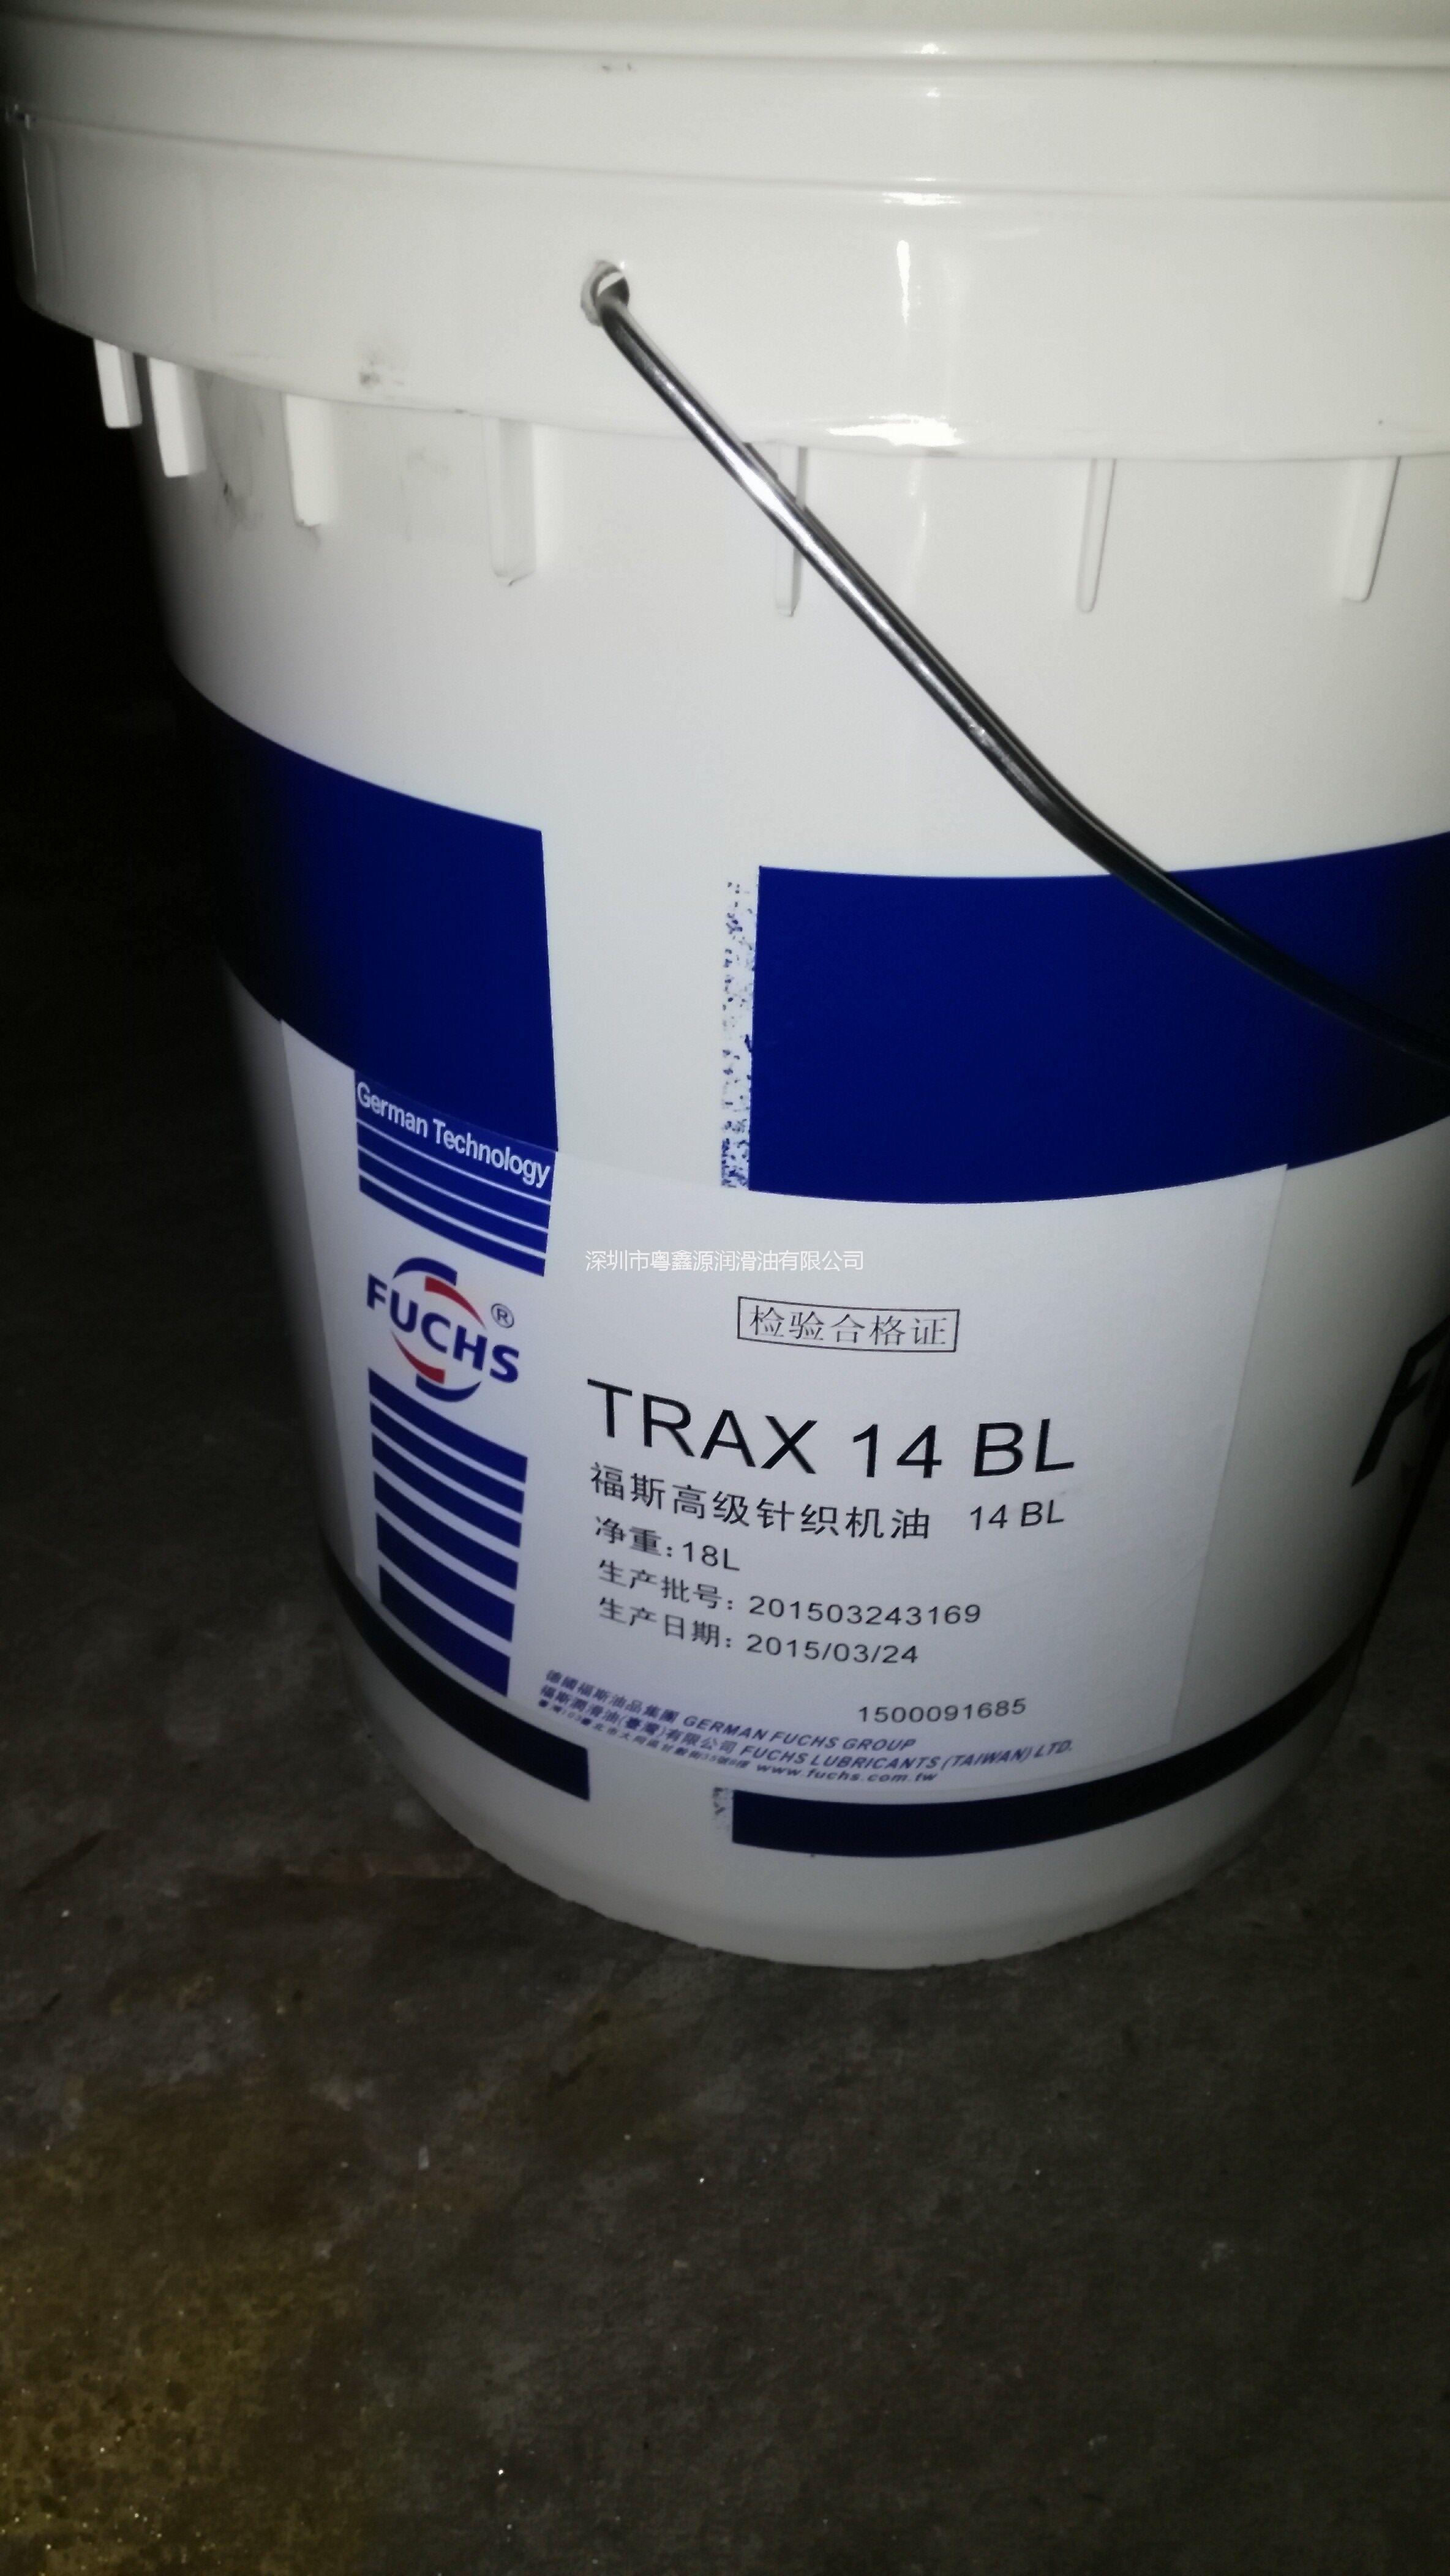 供应FUCHS TRAX 14 C福斯高级针织机油